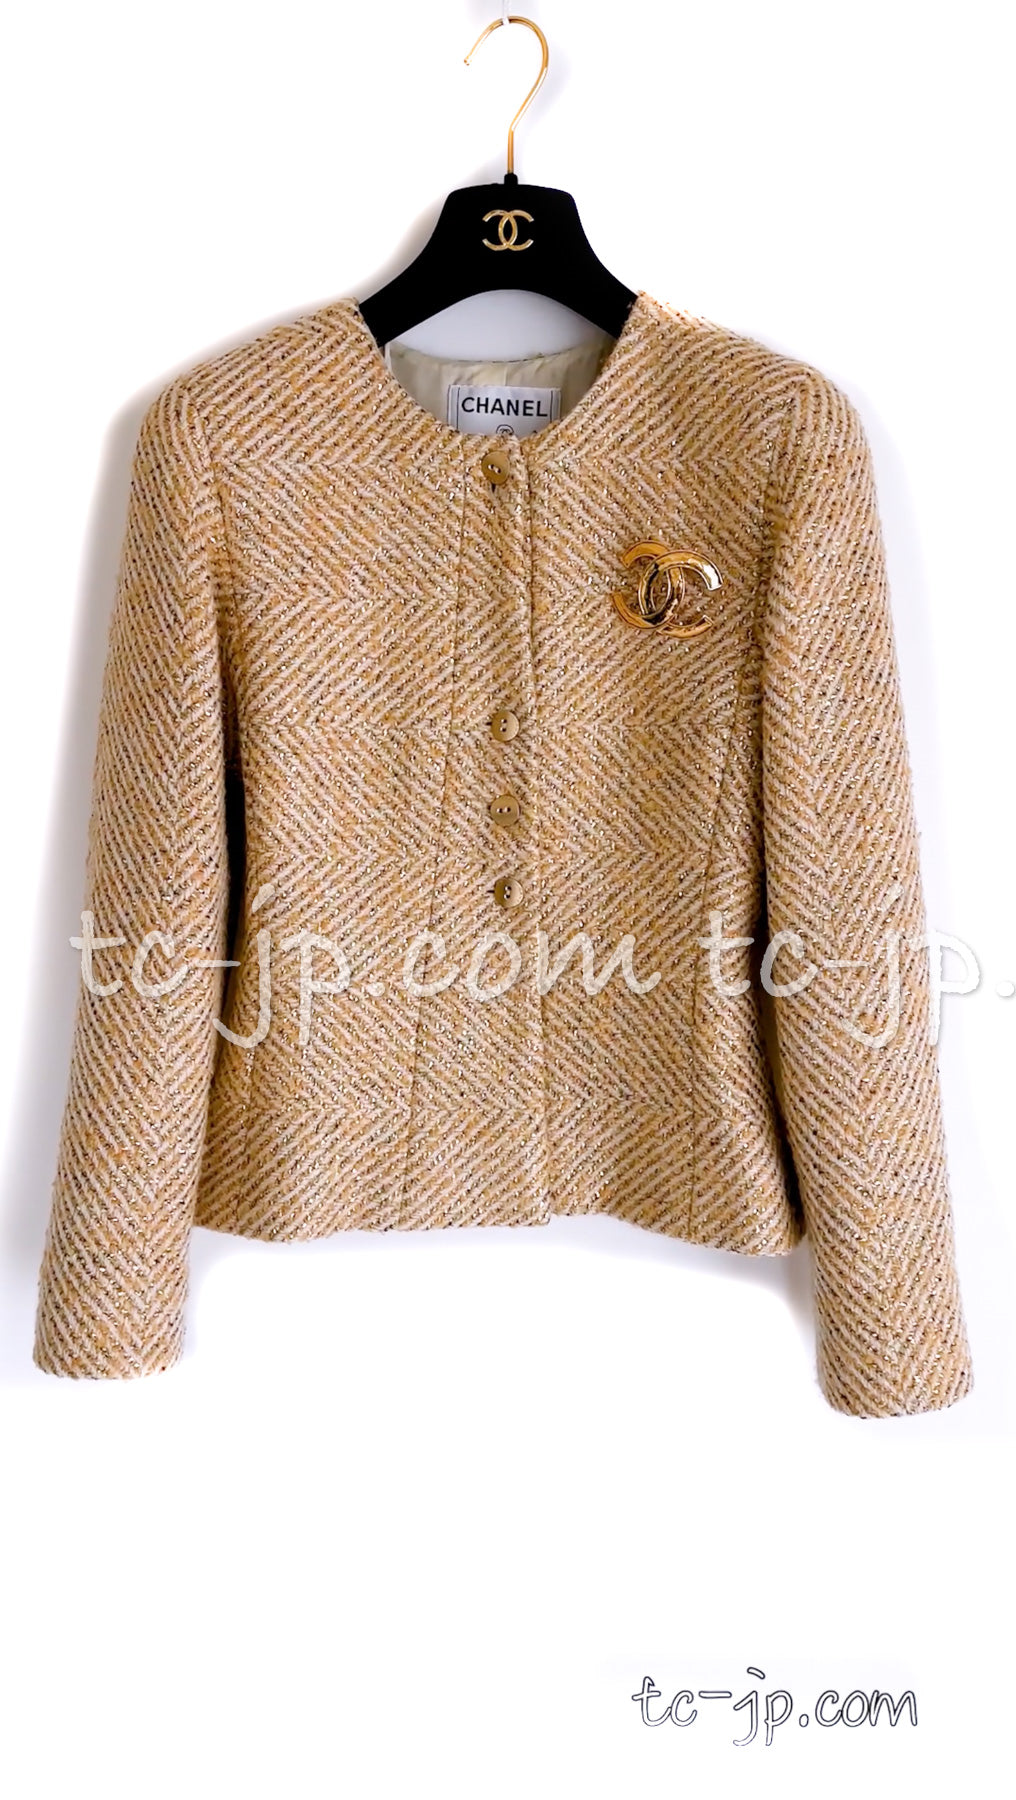 CHANEL 00A Vintage Gold Beige Wool Jacket w/ Scarf 36 38 シャネル ヴィンテージ・ゴールド・ベージュ・ウール・ジャケット 即発